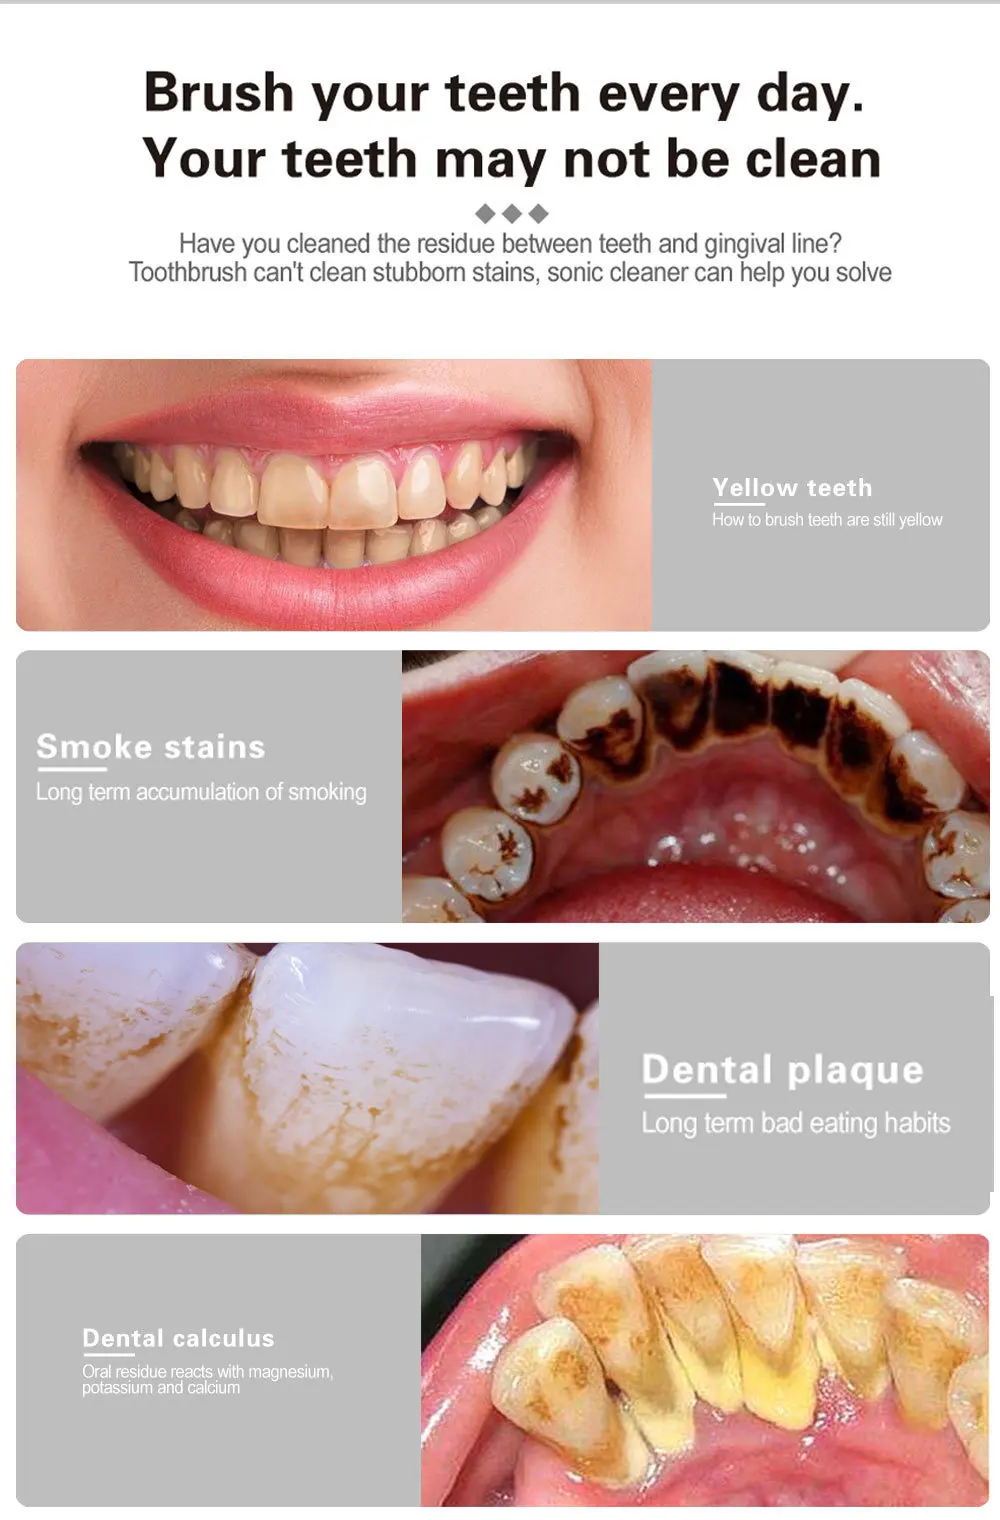 الكهربائية الأسنان مزيل حساب التفاضل والتكامل الأسنان تنظيف جهاز الأسنان نظافة الأسنان تبييض الري إزالة الجير قشارة الأخضر